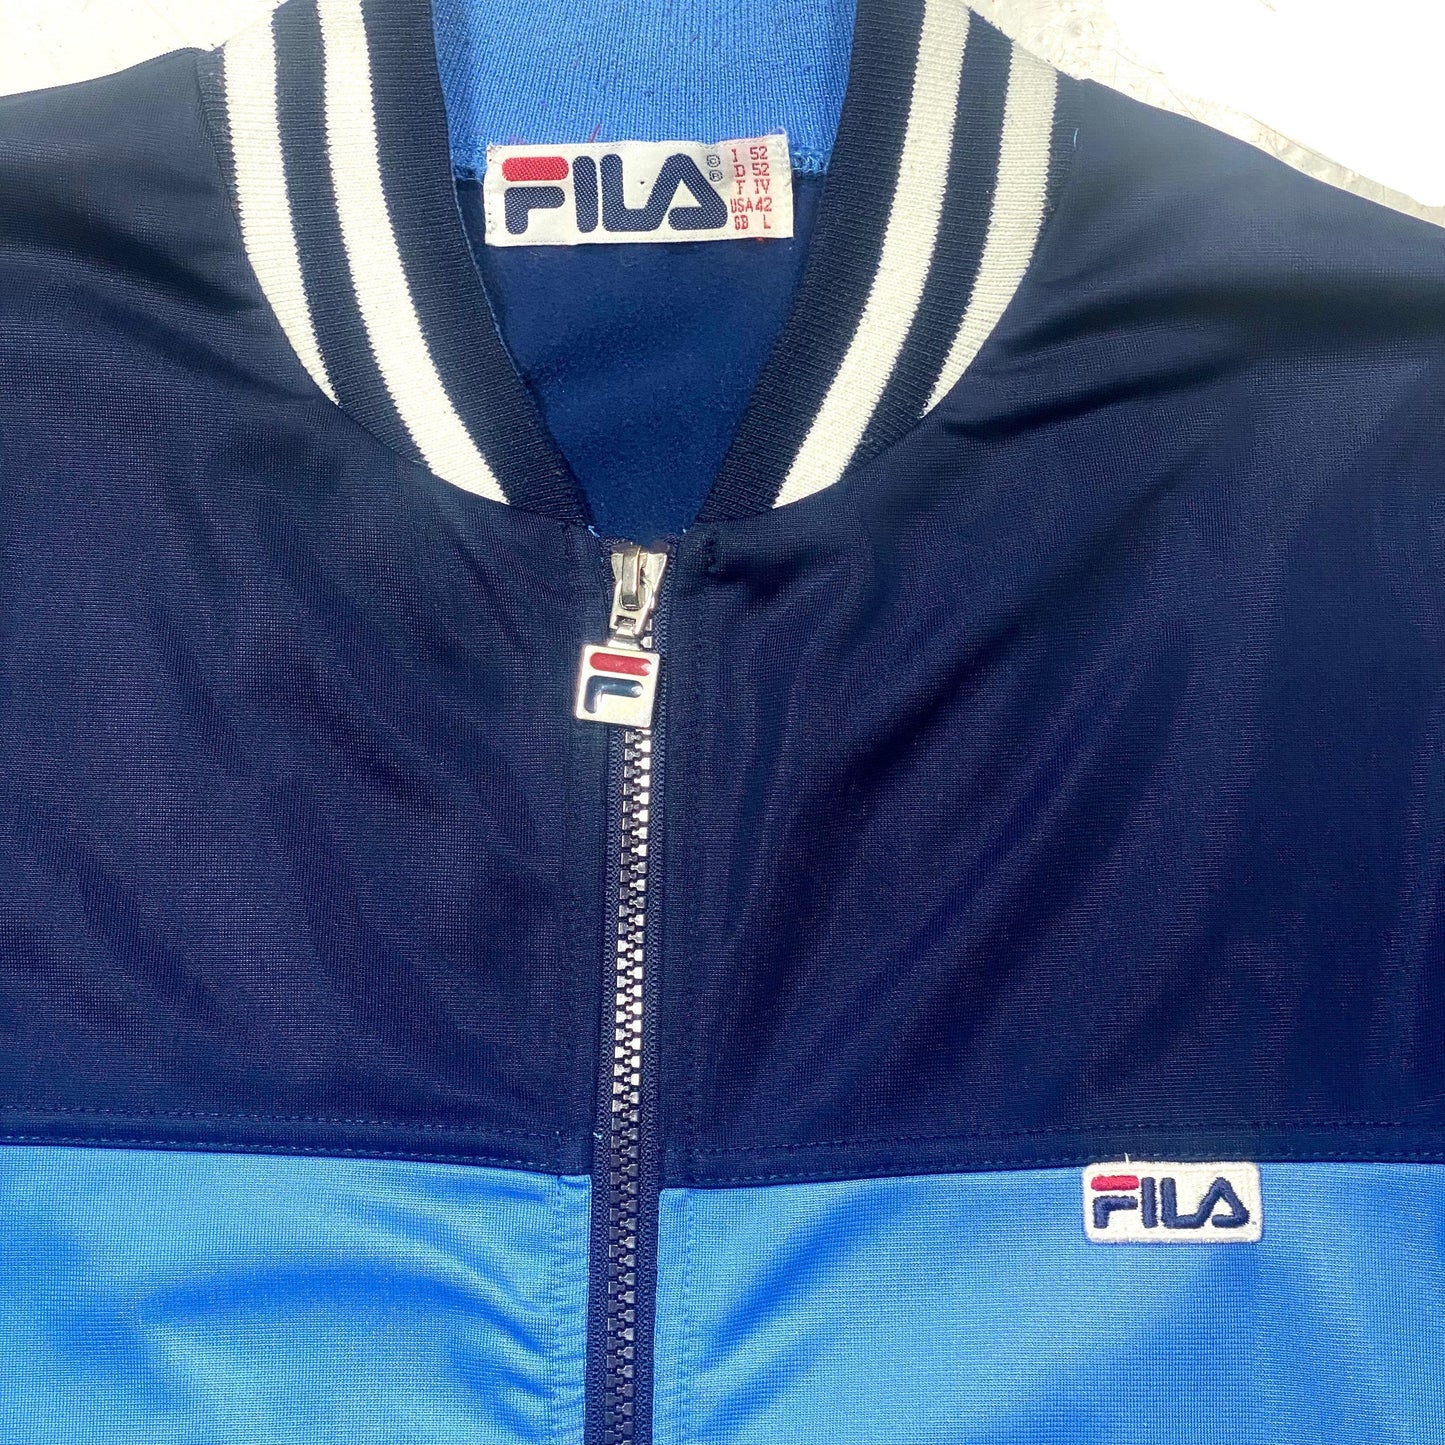 Fila slim fit blue tones tracktop jacket, Italy 80s Mint